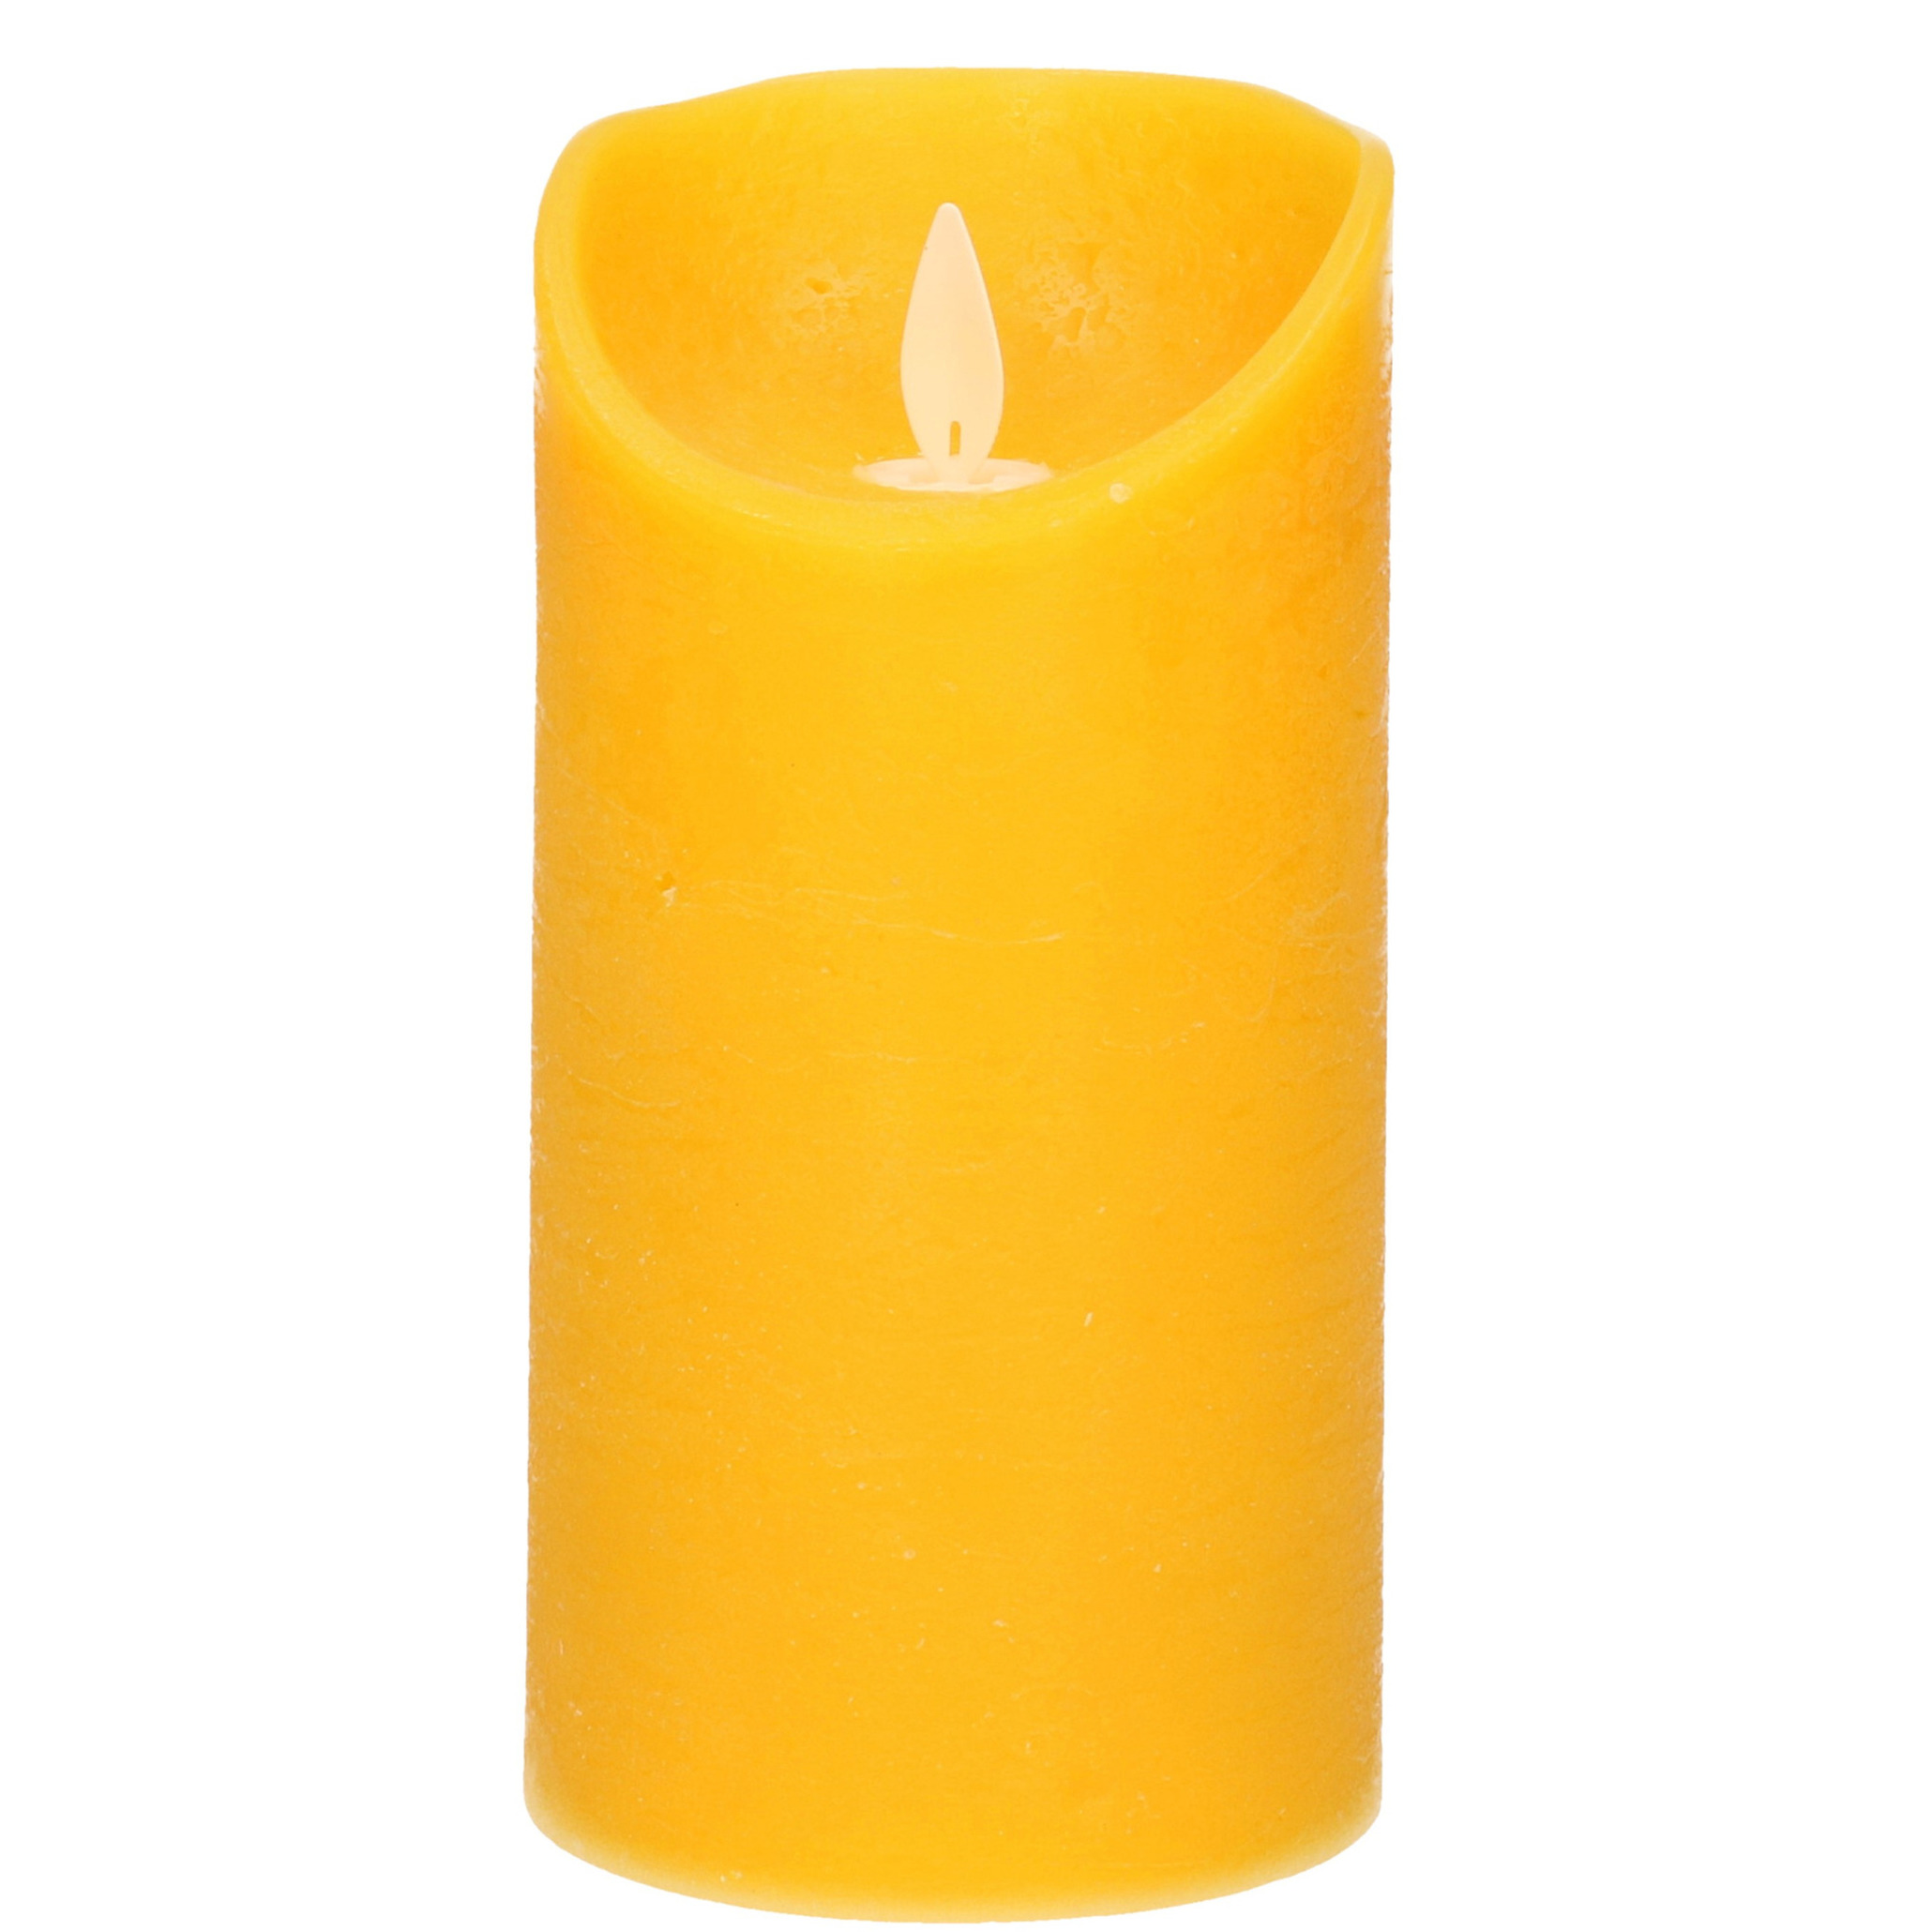 1x Oker gele LED kaarsen-stompkaarsen met bewegende vlam 15 cm